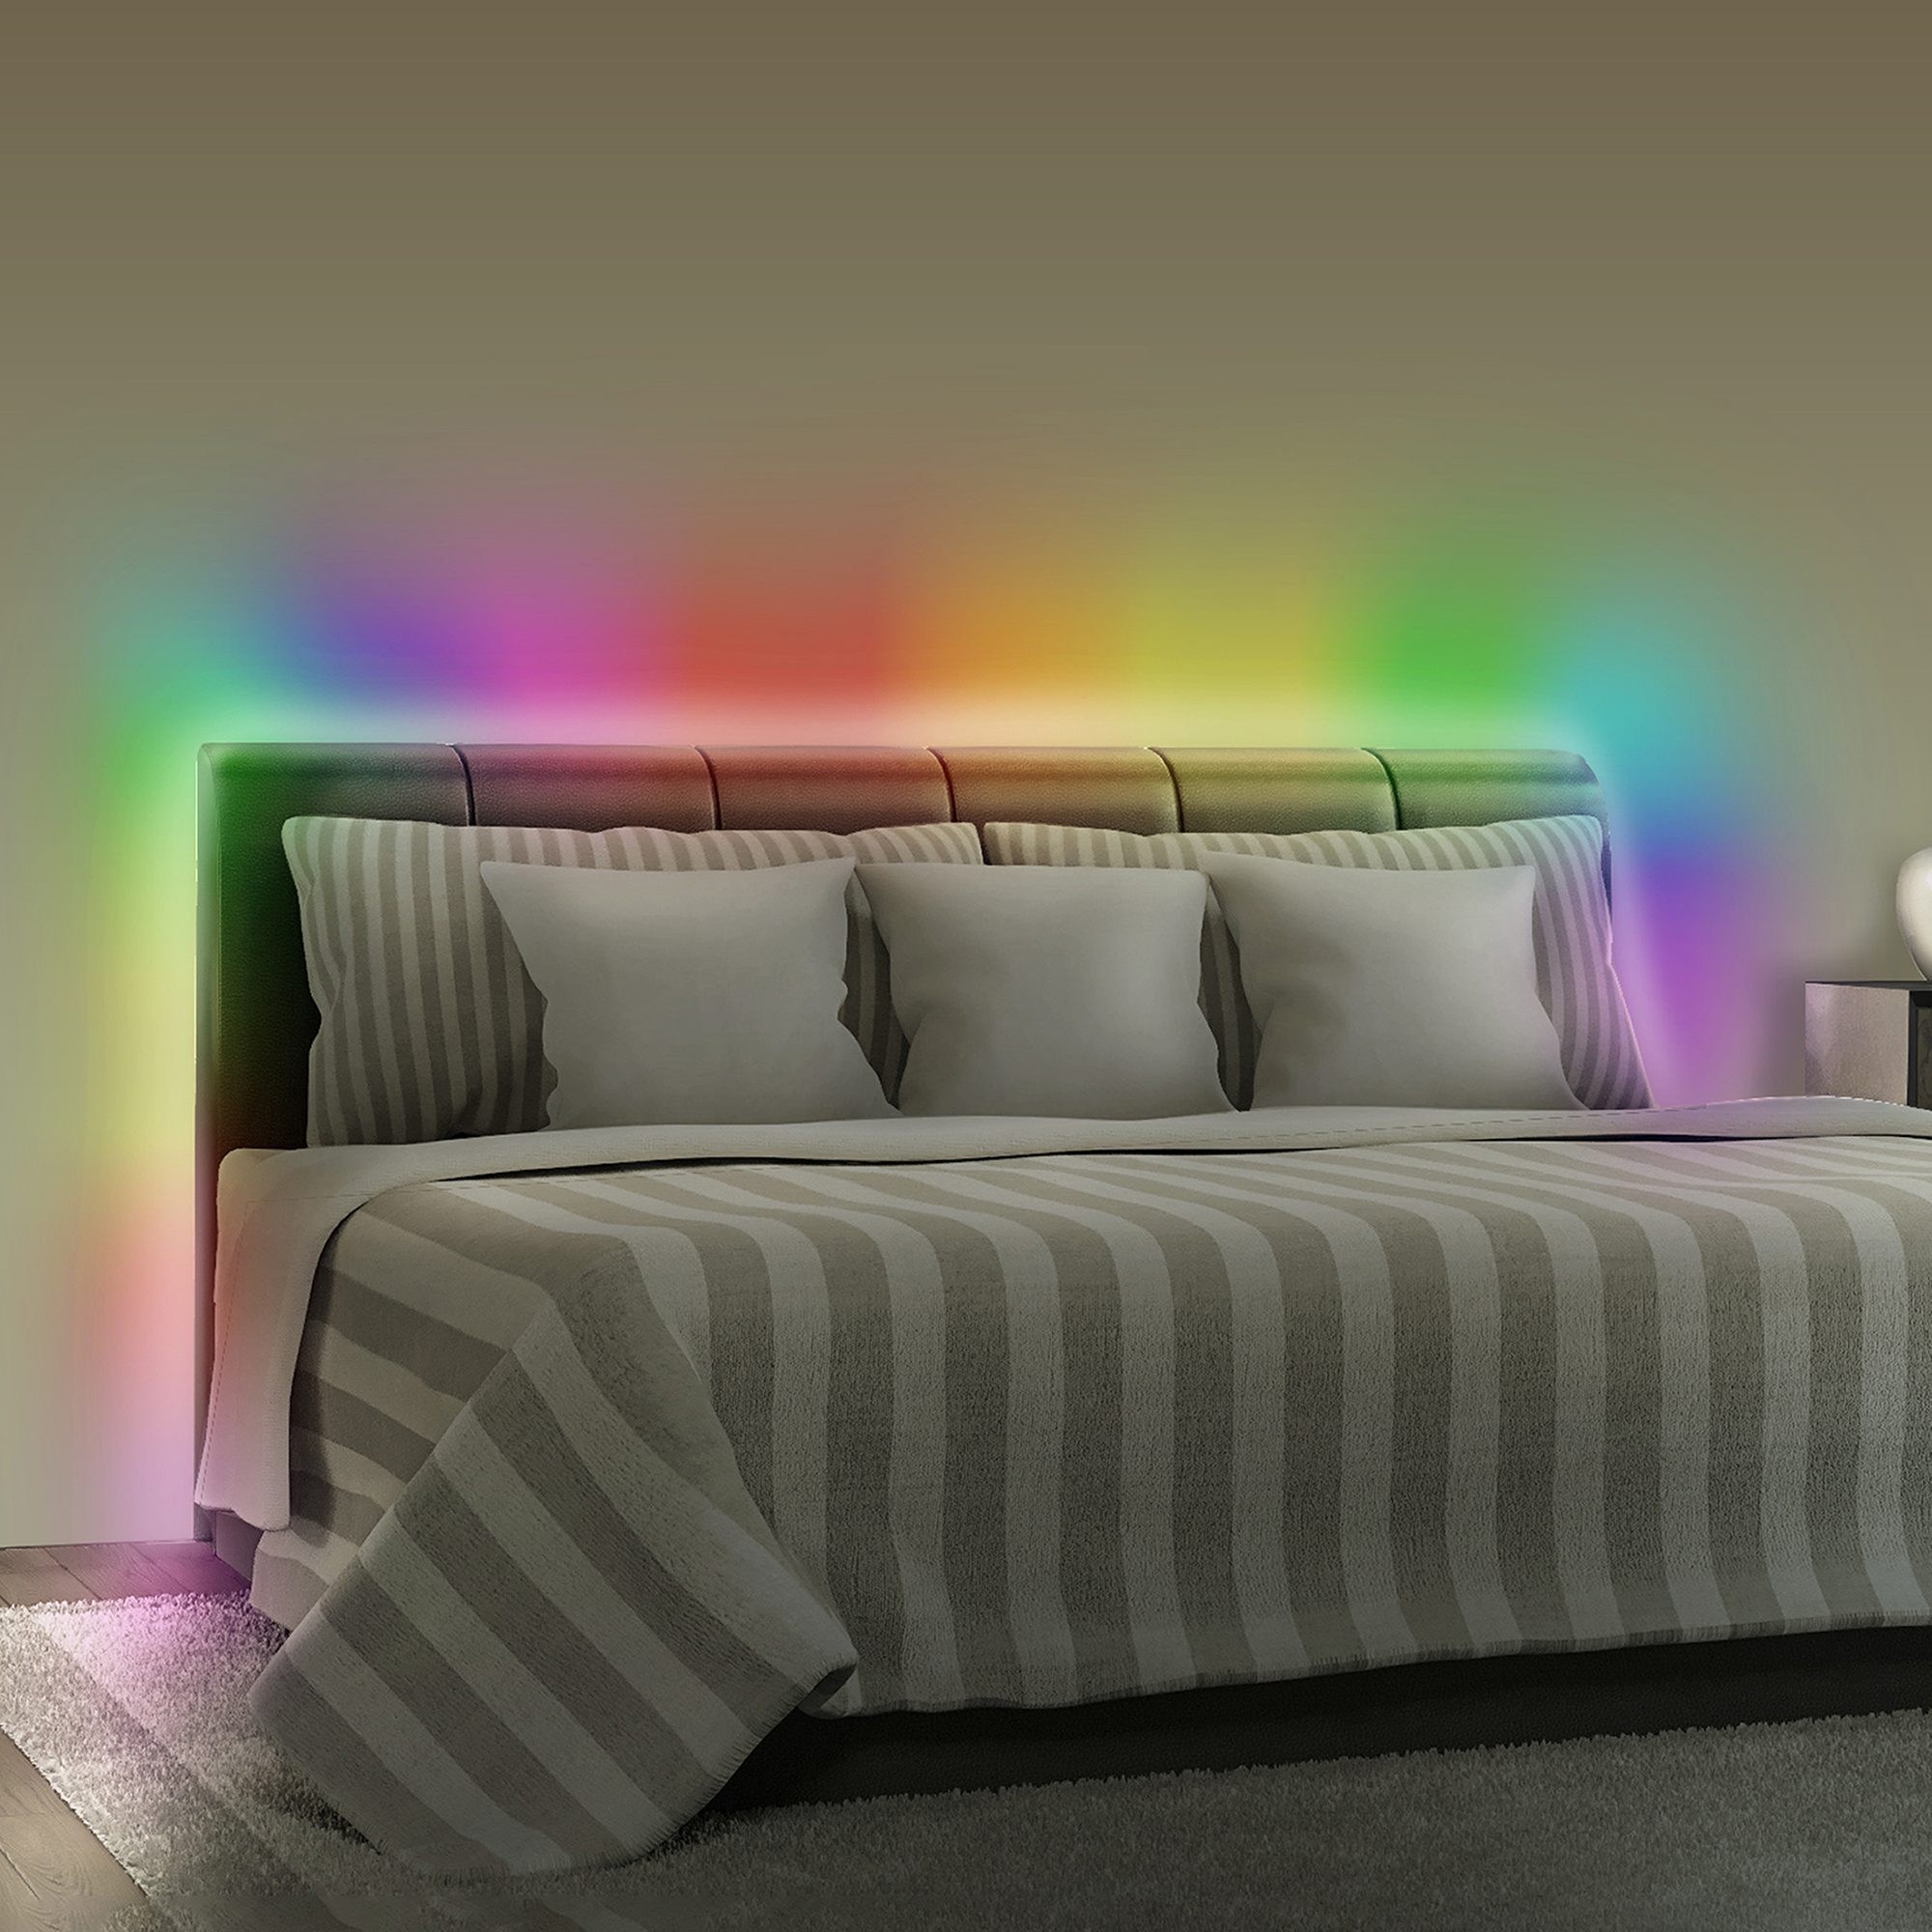 Xtreme Lit 3ft Multicolor LED Strip, 16 Unique Colors/4 Modes 